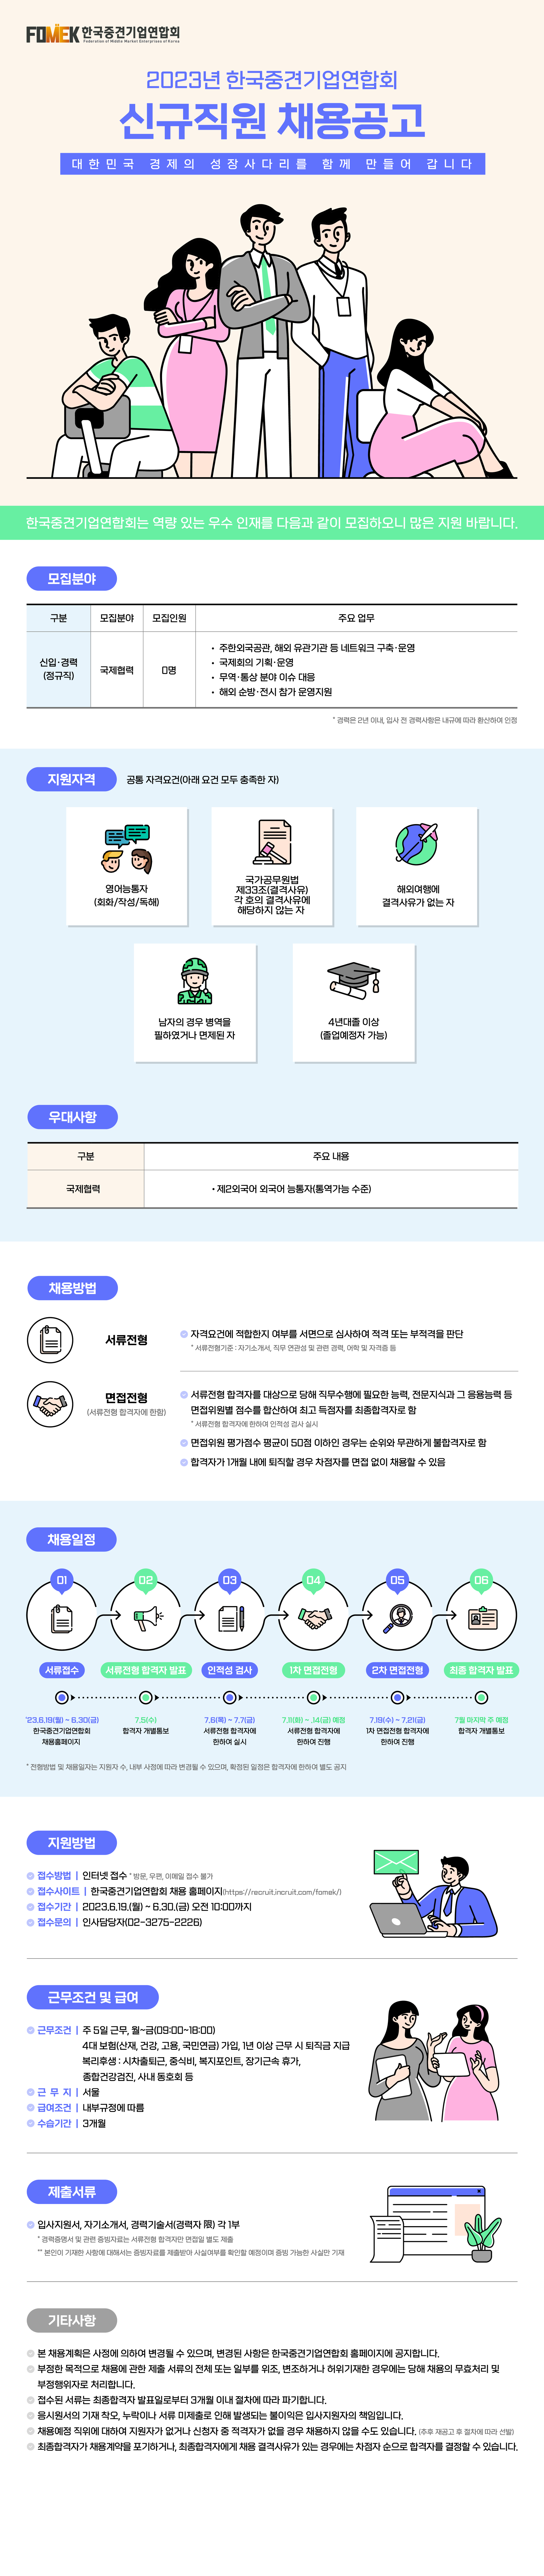 한국중견기업연합회 신규직원 채용 공고